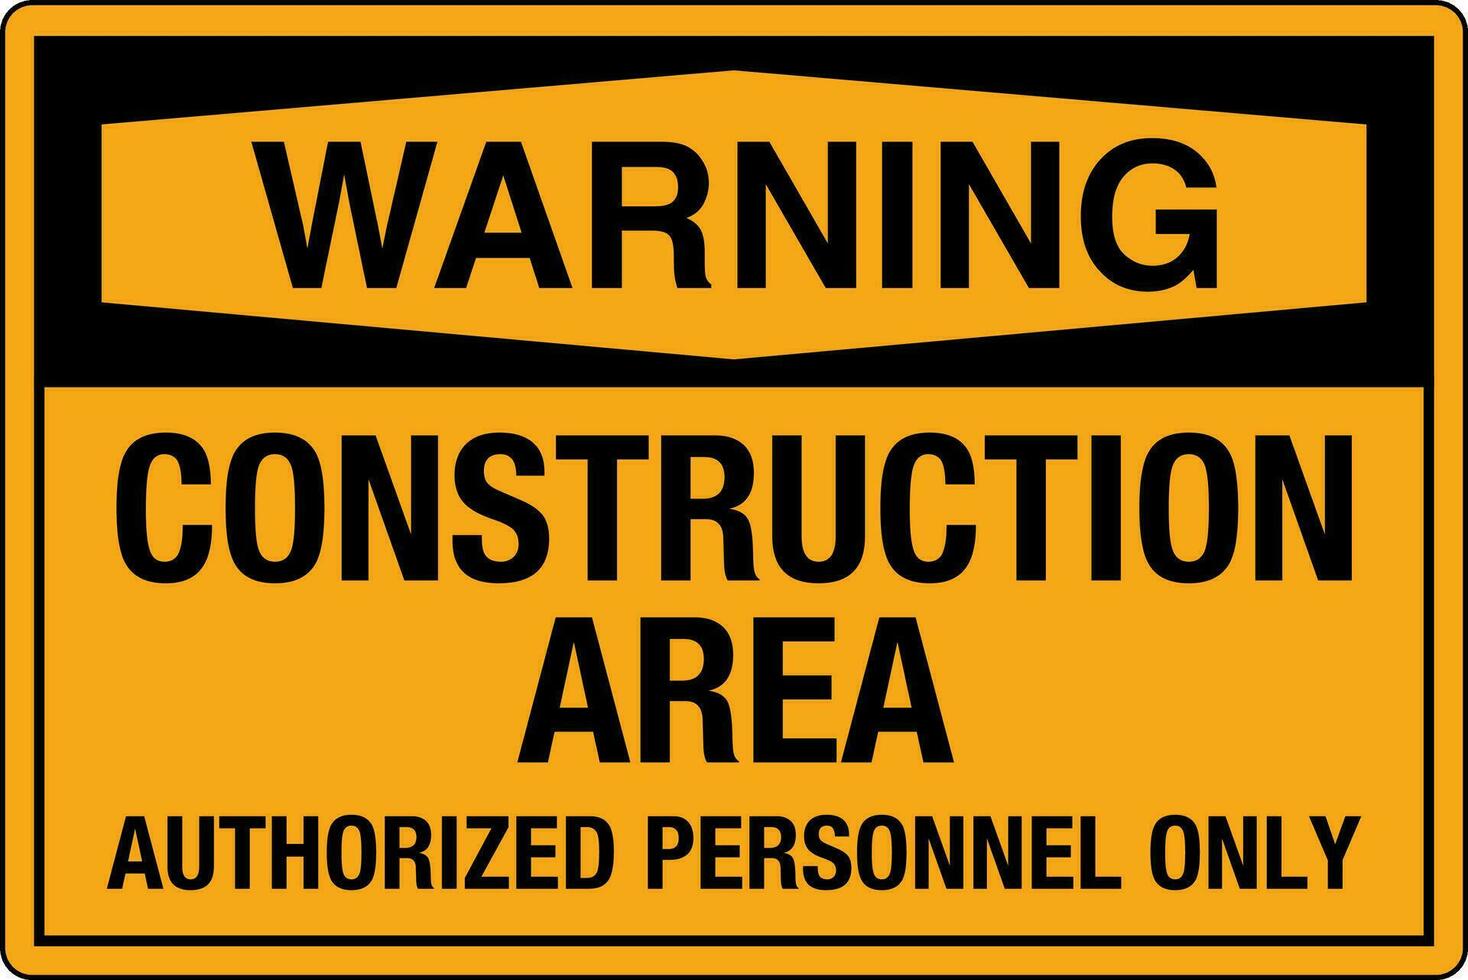 osha standard simboli registrato posto di lavoro sicurezza cartello Pericolo attenzione avvertimento costruzione la zona autorizzato personale solo vettore